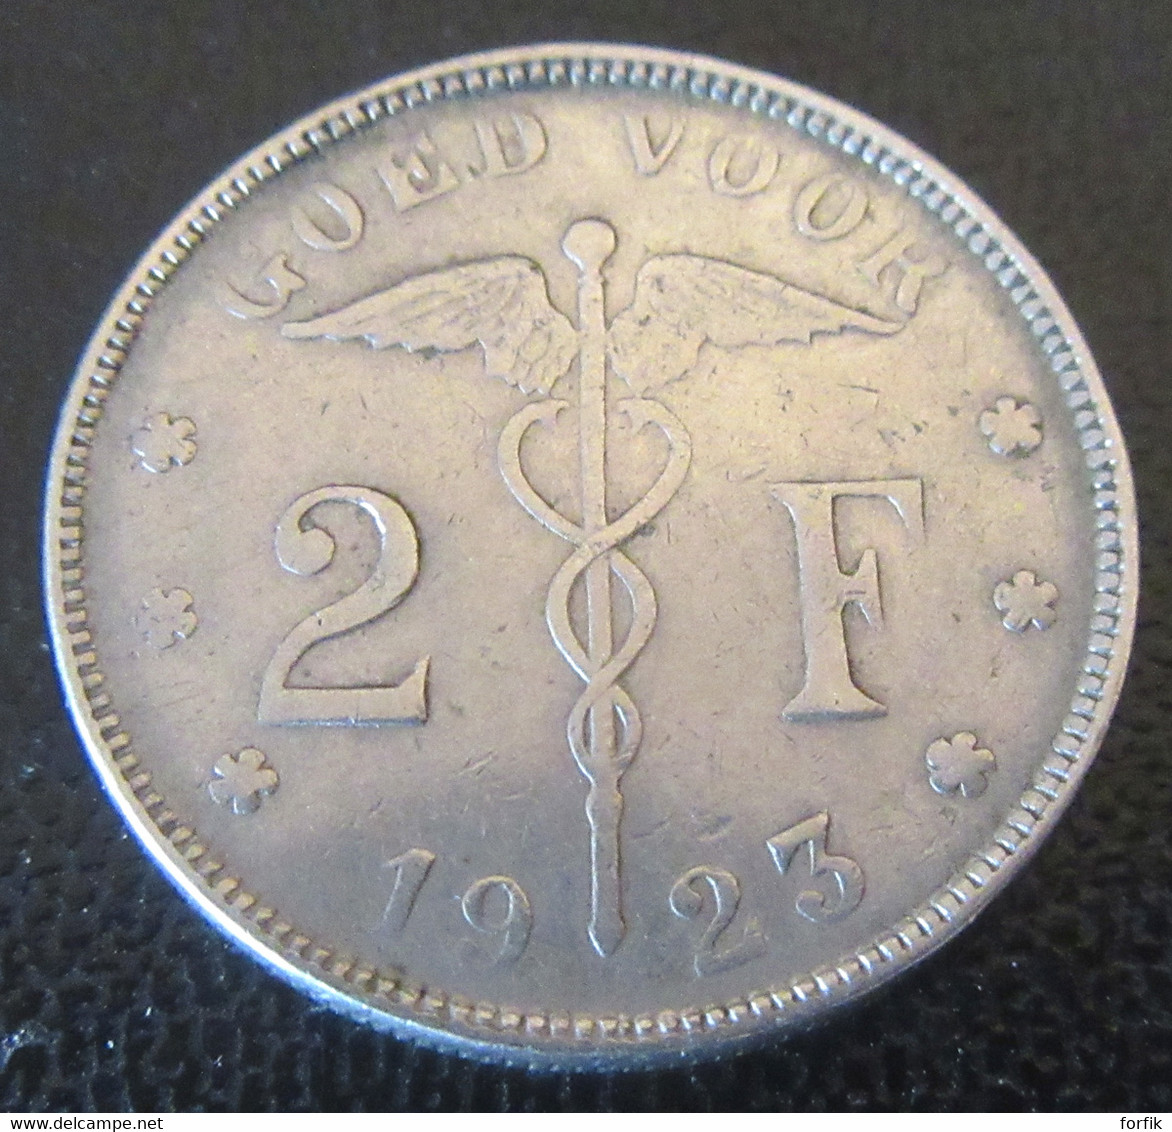 Belgique - Monnaie Bon Pour 2 Francs (Goed Voor 2 F) 1923 - Légende En Néerlandais - 2 Francos